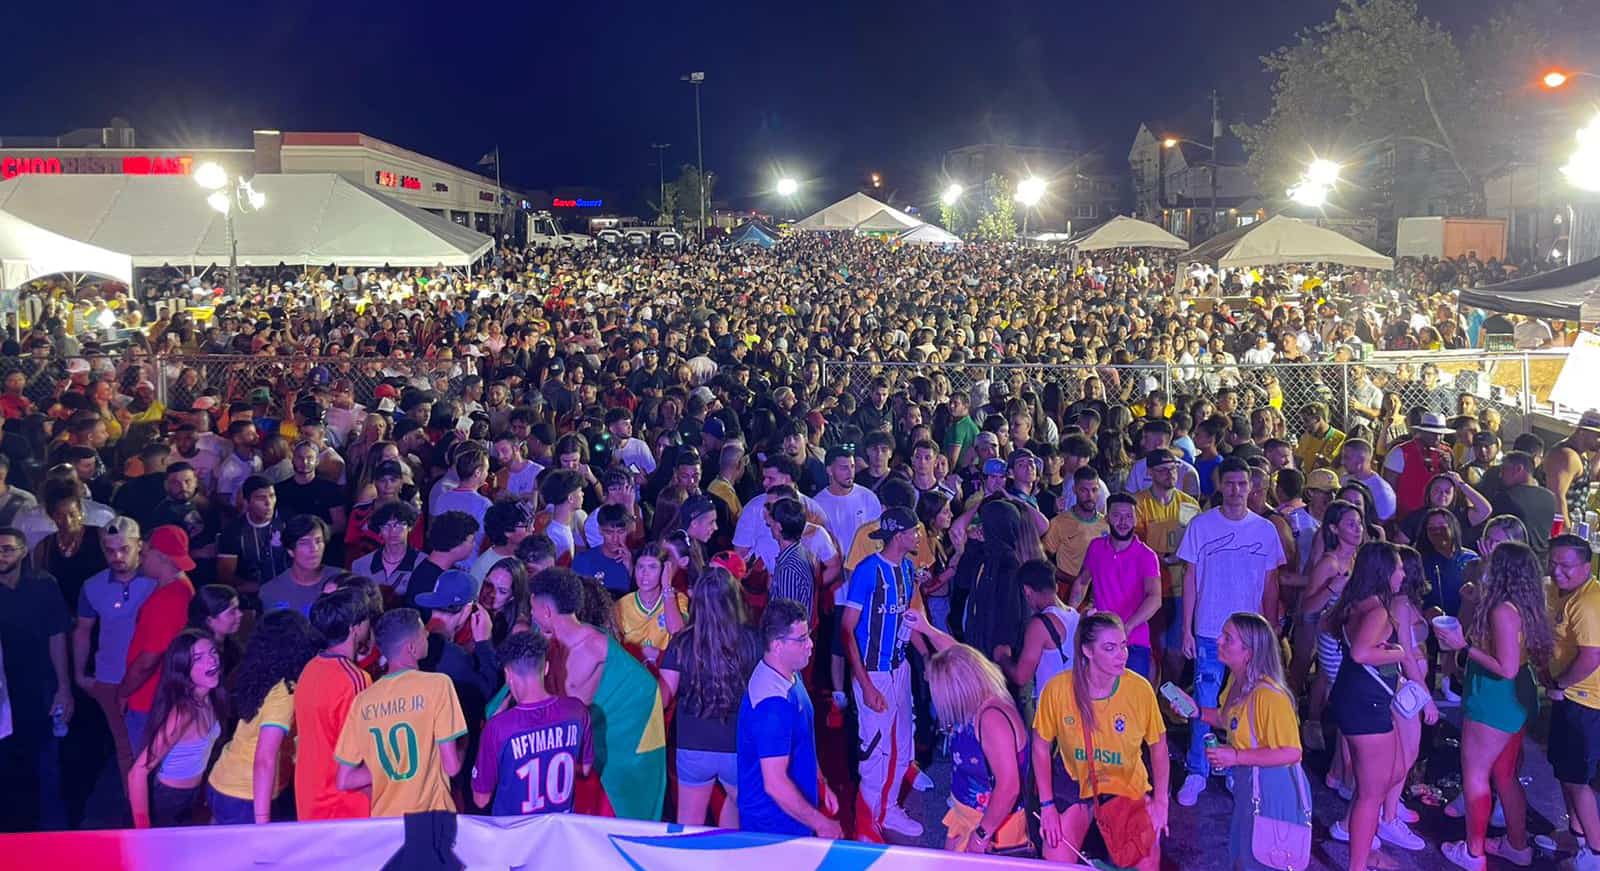 festa 2 Um mar de gente! festa do Brasil em Newark bate recorde de público